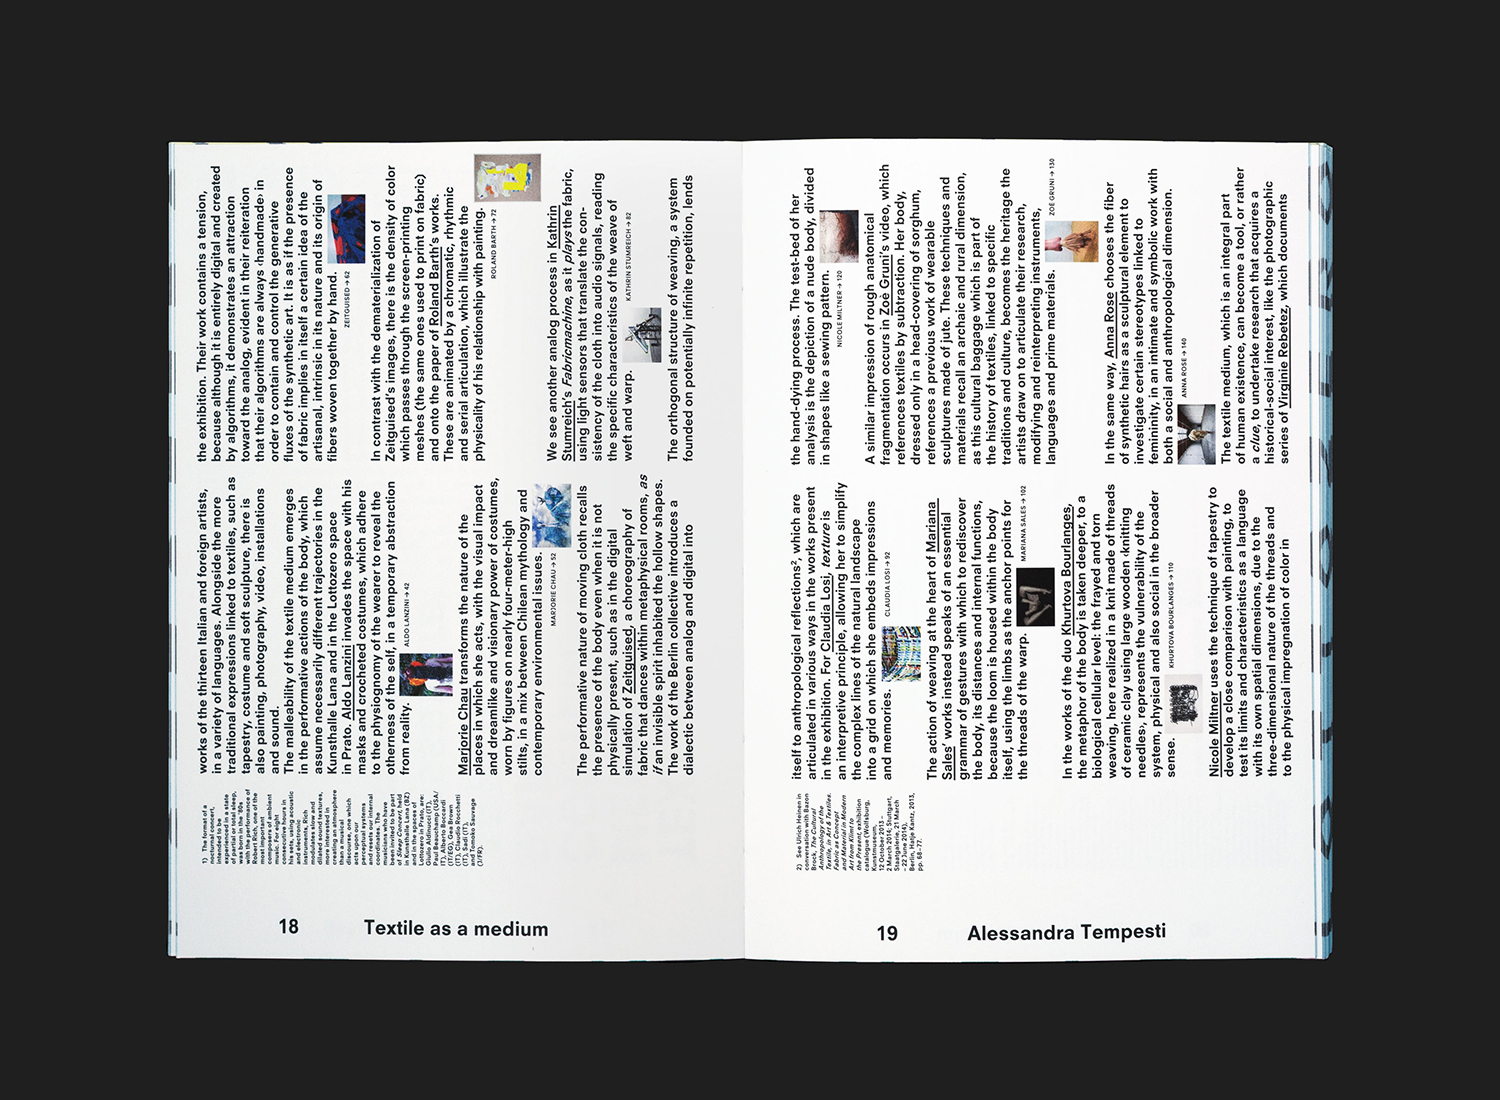 Multi-lingual art book designed by Studio Mut for the exhibition Inside Lottozero at Lottozero / textile laboratories